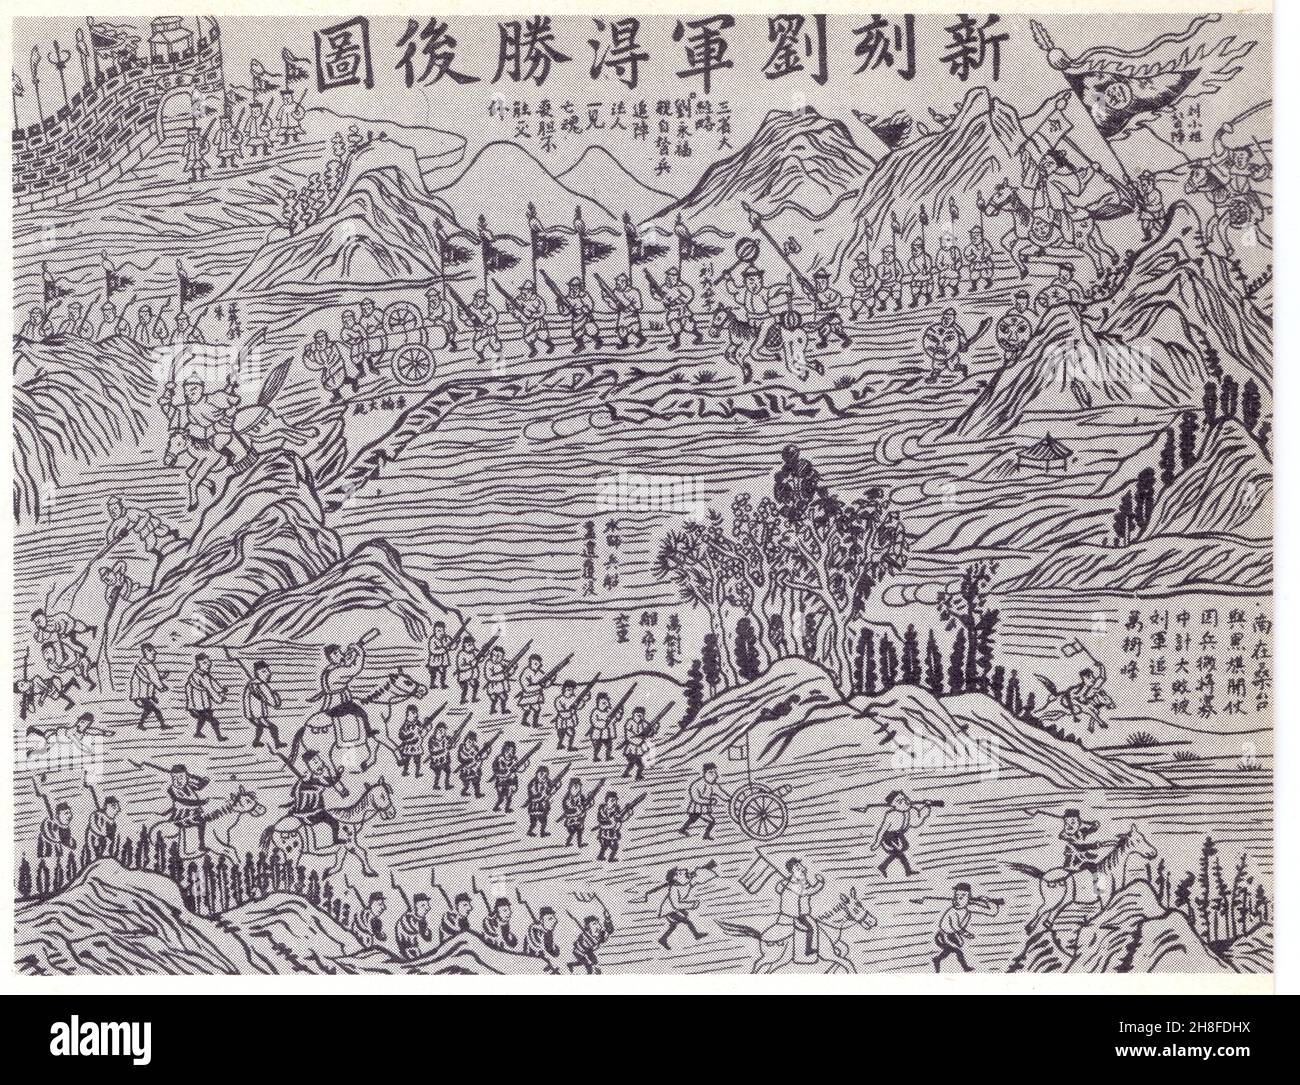 La Guerre de Tonkin.gravure chinoise évoquant un succès des Pavillons Noirs contre les troupe franaises près de Bac Ninh. Foto Stock